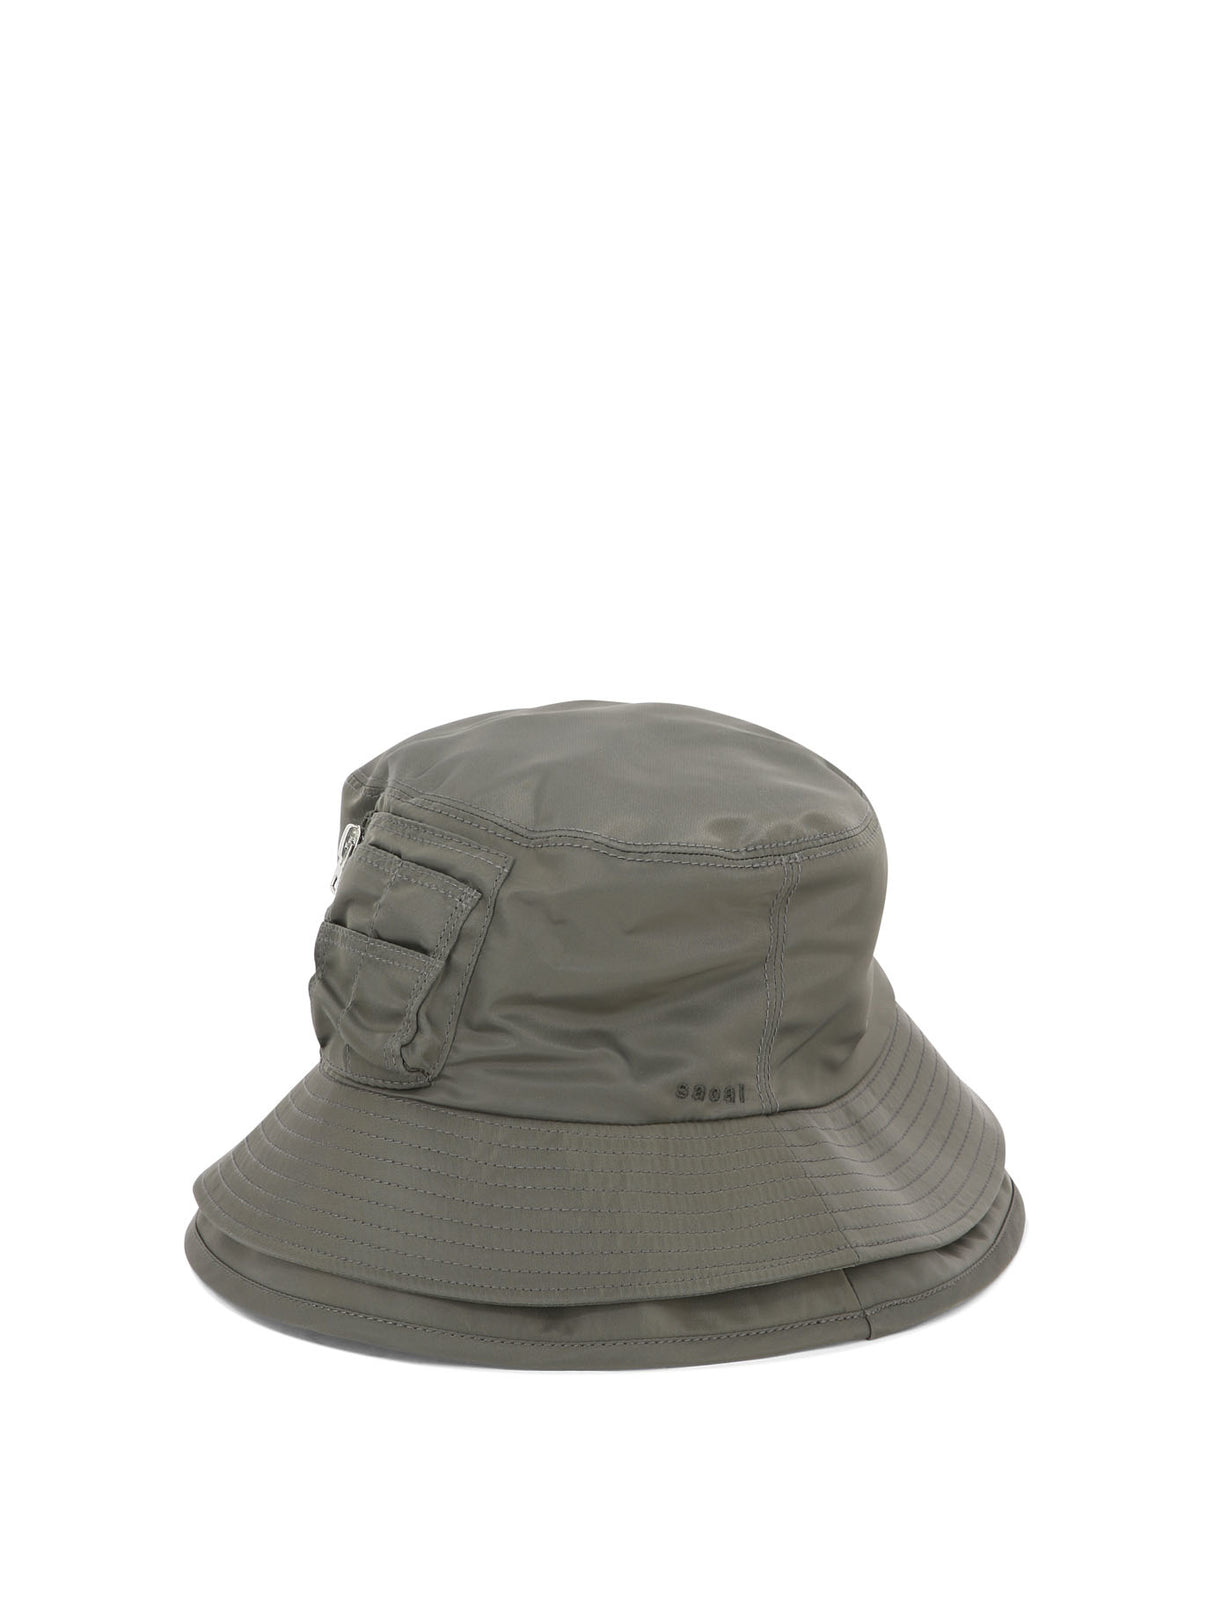 قبعة زيل مزدوجة باللون الأخضر مع جيب مضغوط وشعار مطرز للرجال